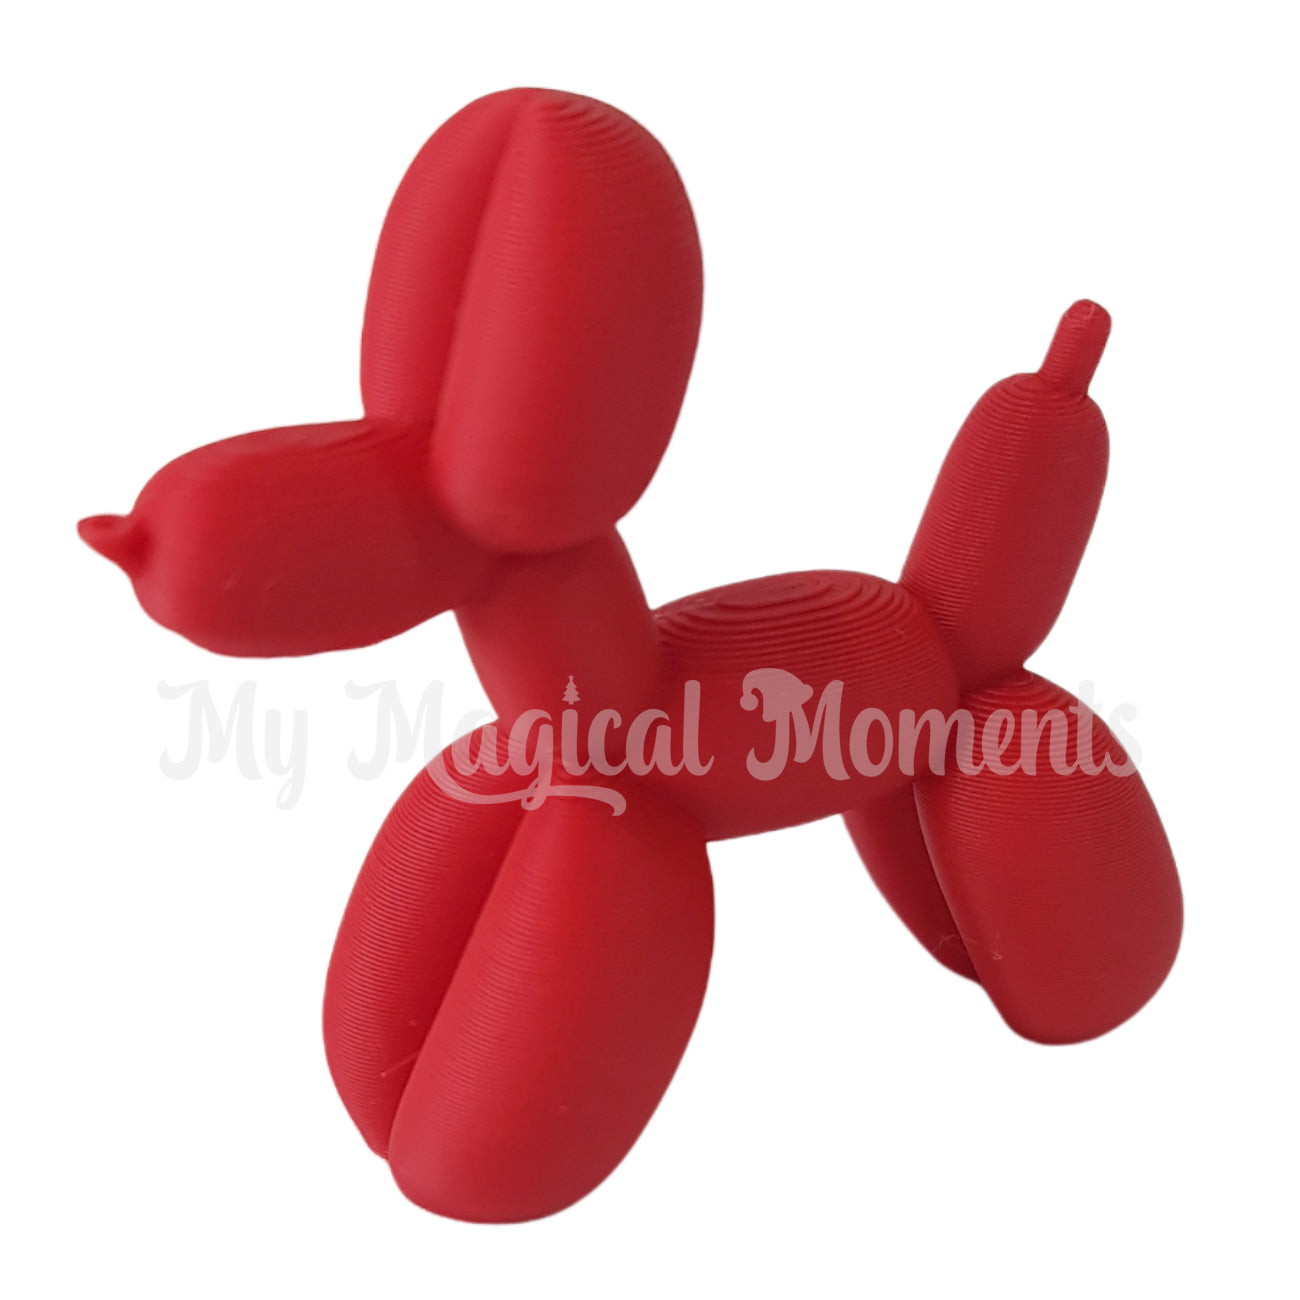 Miniature red balloon animal